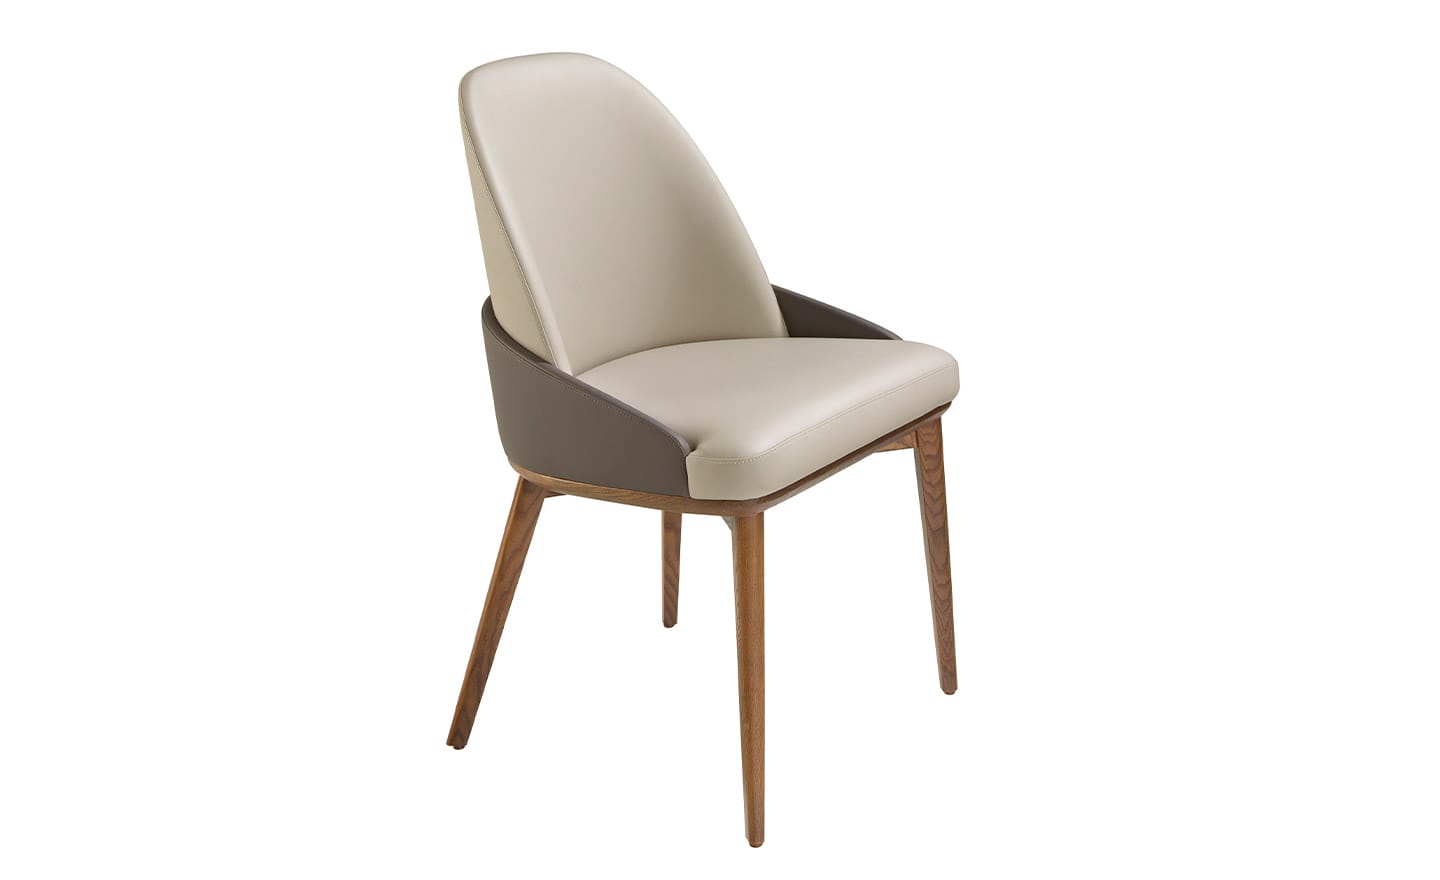 Cadeira Calle 4120 - Design sofisticado, estofada em pele sintética | Moveistore